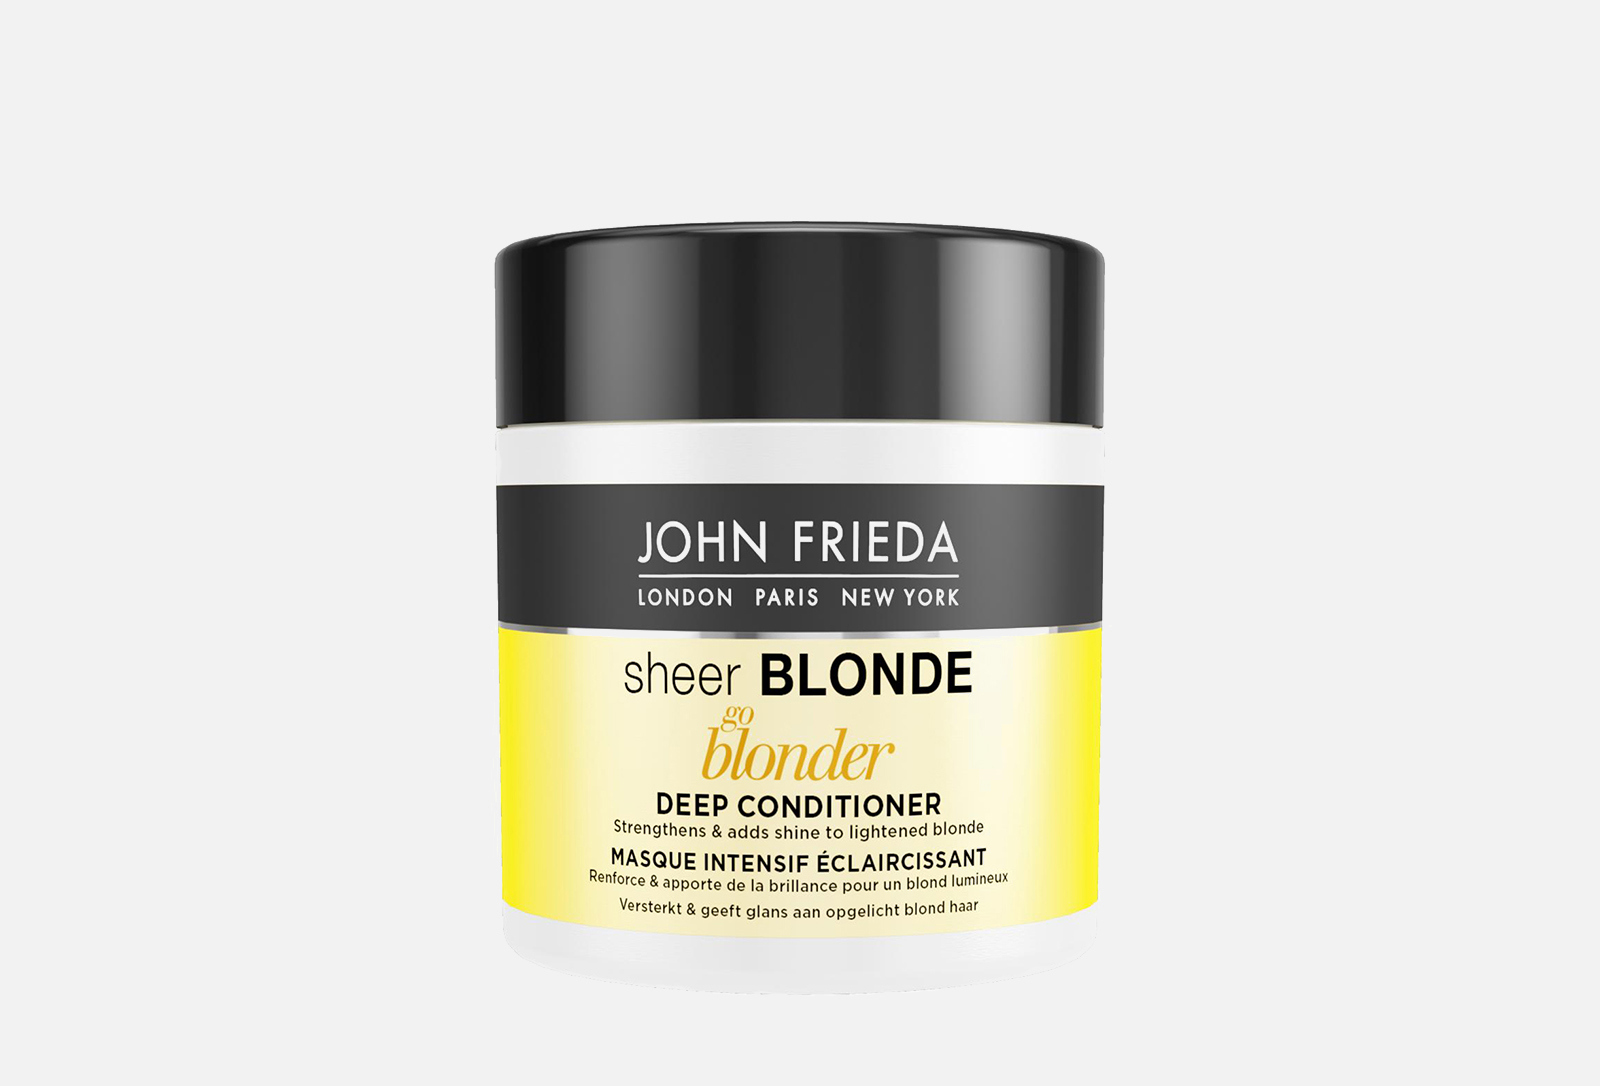 John Frieda маска. Маска John Frieda to blonde. John Frieda Sheer blonde маска для светлых волос. John Frieda go blonder. Лучшие маски для блондинок